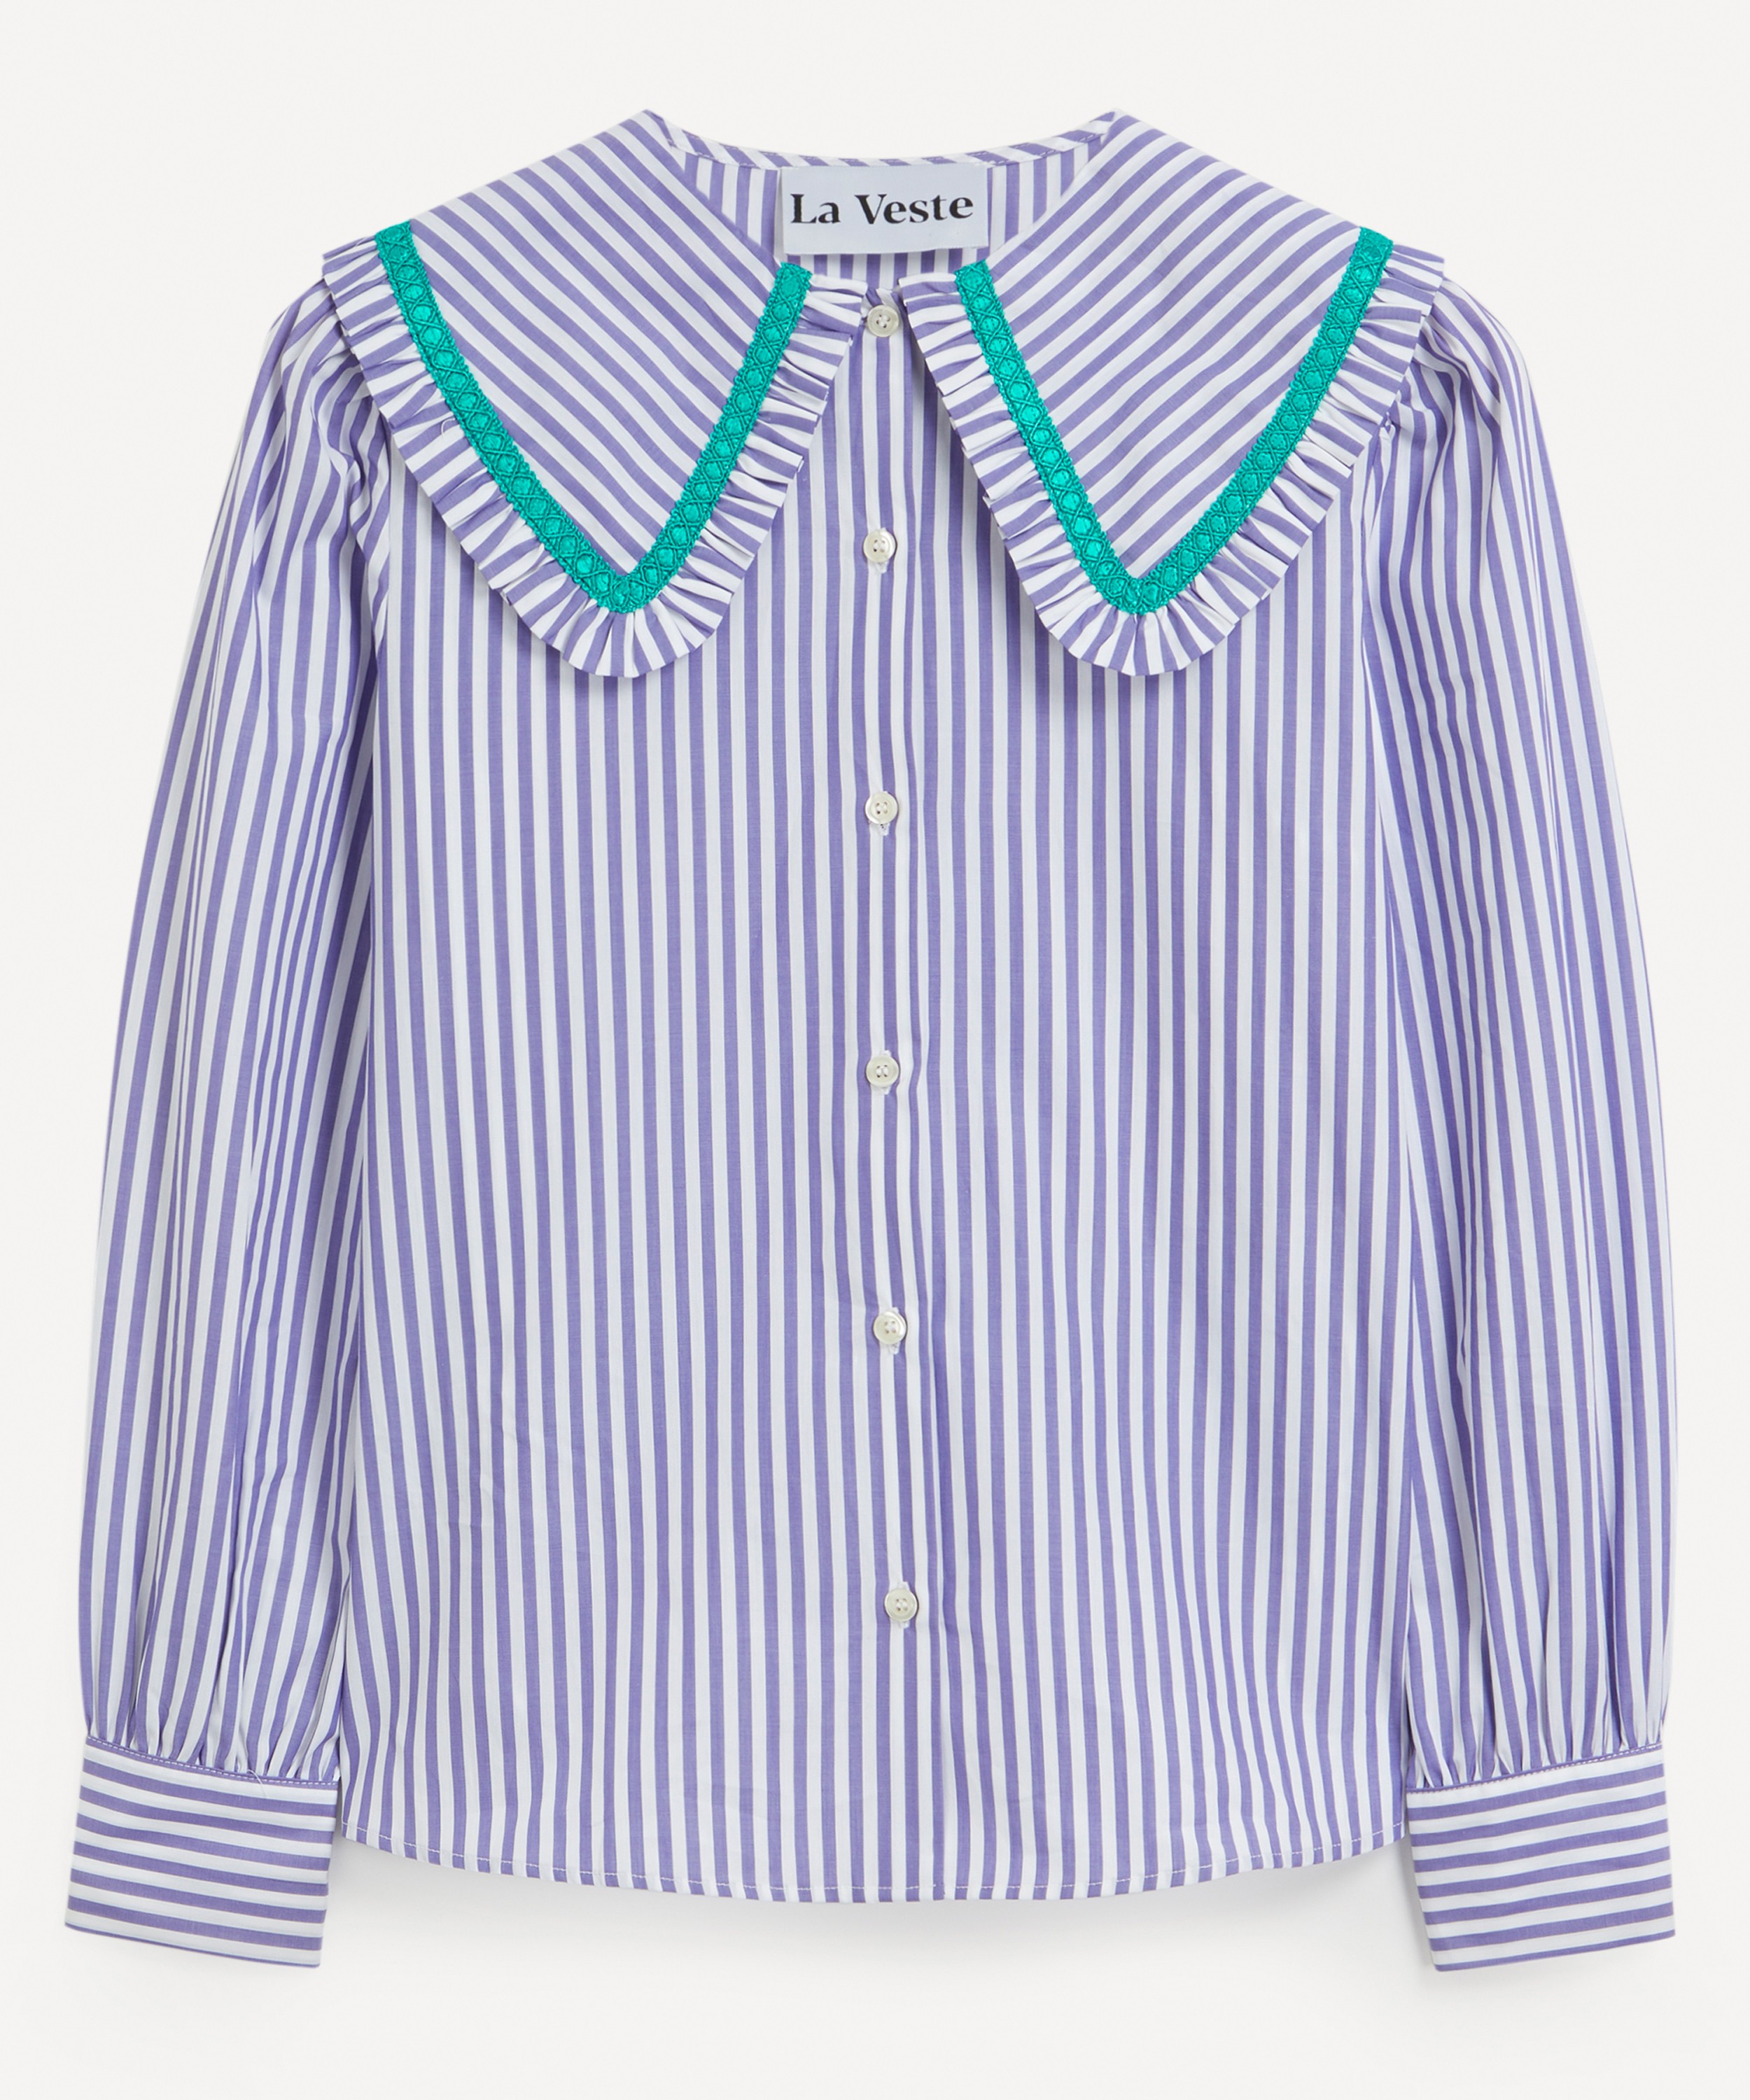 La Veste - Striped School Shirt image number null